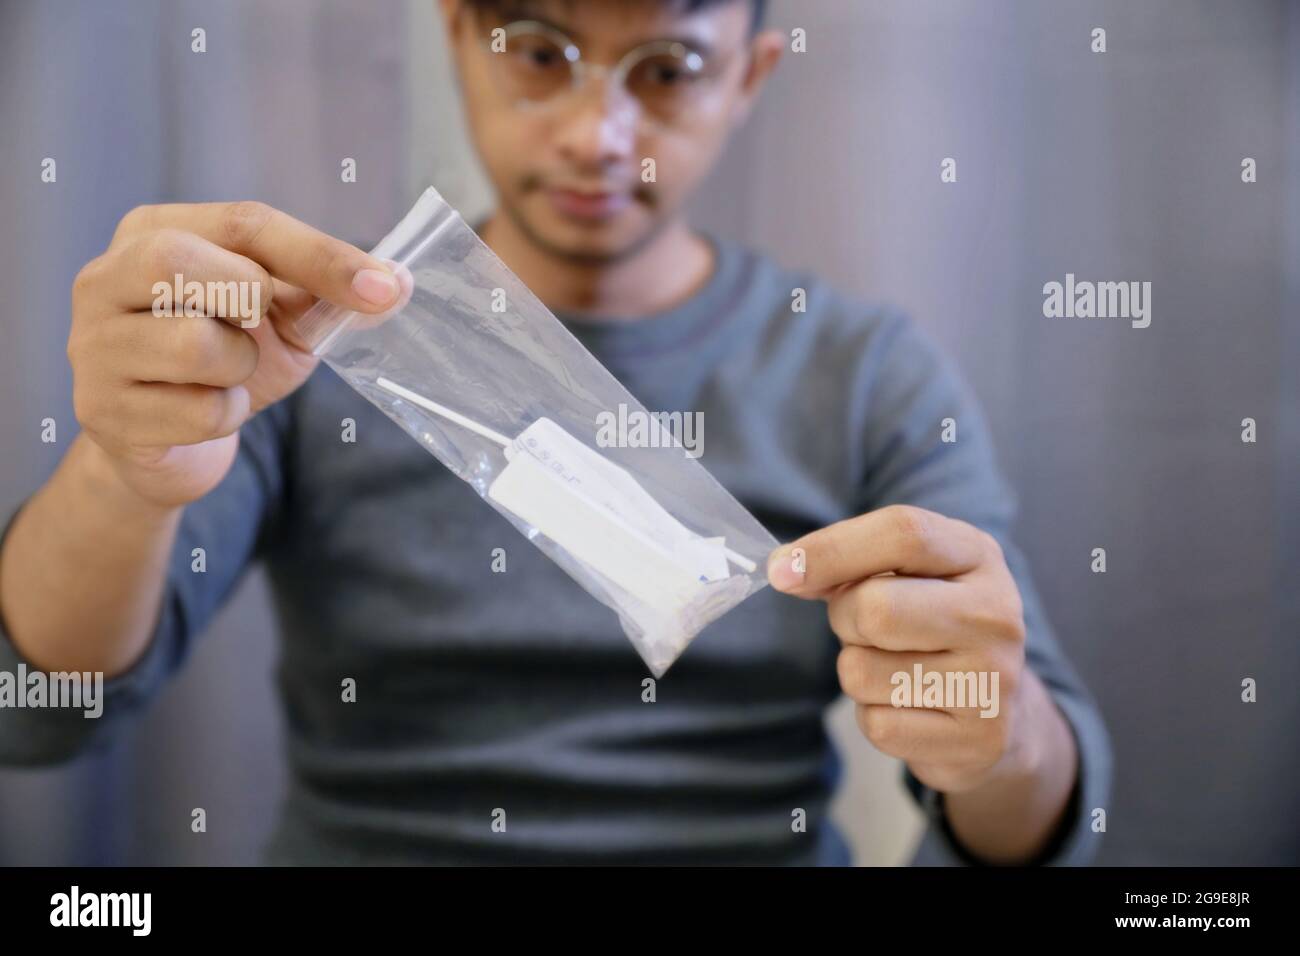 L'homme ramasse les déchets infectés par la machine de test Covid-19 dans un joli sac à glissière pour les détruire correctement.après utilisation, l'auto-test Covid-19 (test rapide d'antigène) se Banque D'Images